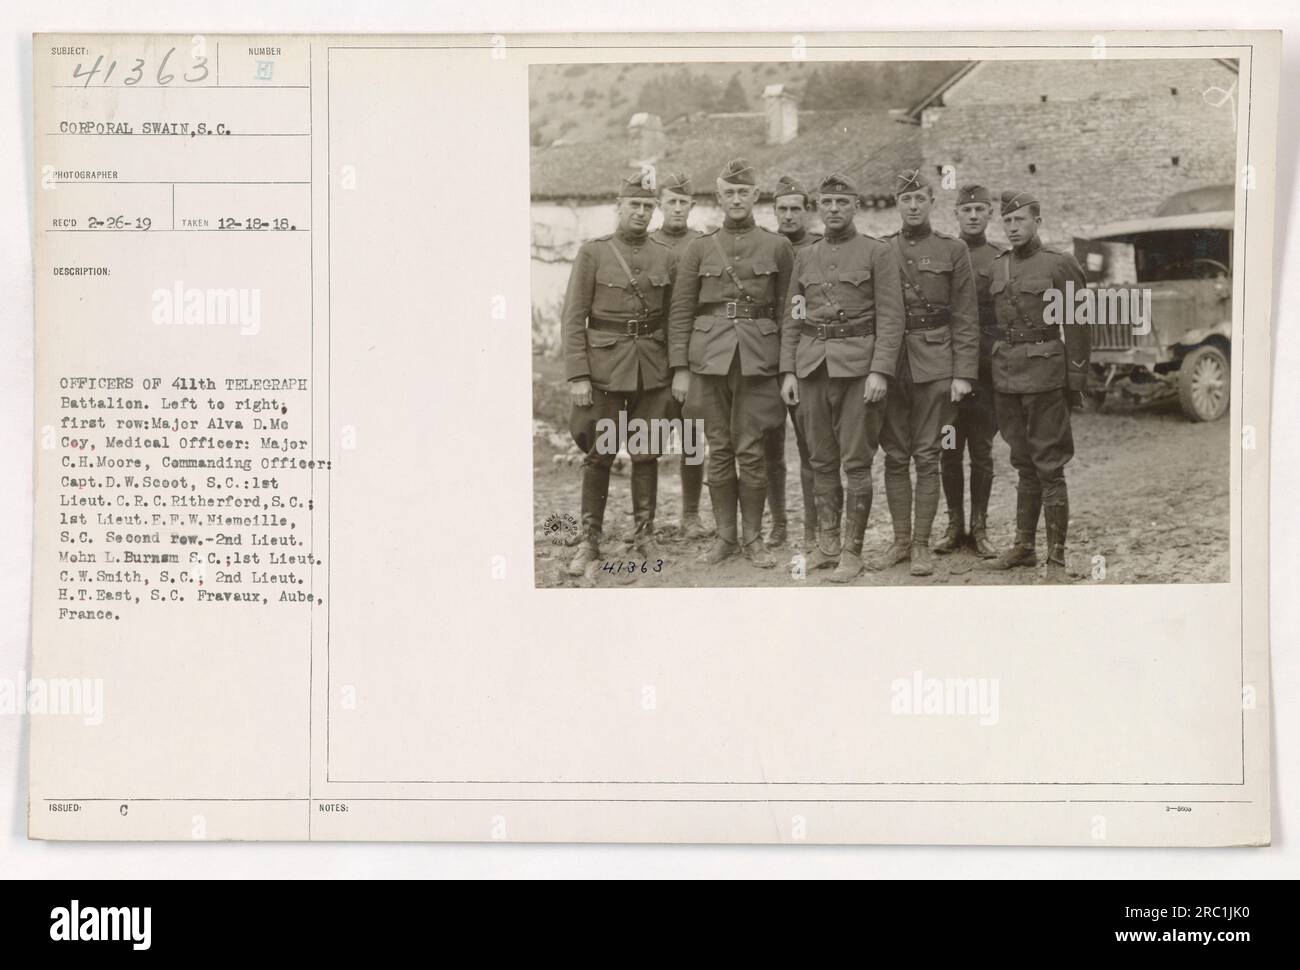 Foto di gruppo degli ufficiali che ritraggono gli ufficiali del 411th Telegraph Battalion durante la prima guerra mondiale Nella foto da sinistra a destra in prima fila sono il maggiore Alva D. me Coy, il maggiore C.H. Moore, capitano D.W. Scoot, 1° Lieut. C.R. Ritherford, e 1st Lieut. F.P.W. Niemeille. Nella seconda fila ci sono 2° Lieut. Mohn L. Burnam, 1° Lieut. C.W. Smith, e il secondo Lieut. H.T. East. La foto è stata scattata a Pravaux, Aube, in Francia, il 18 dicembre 1918. Foto Stock